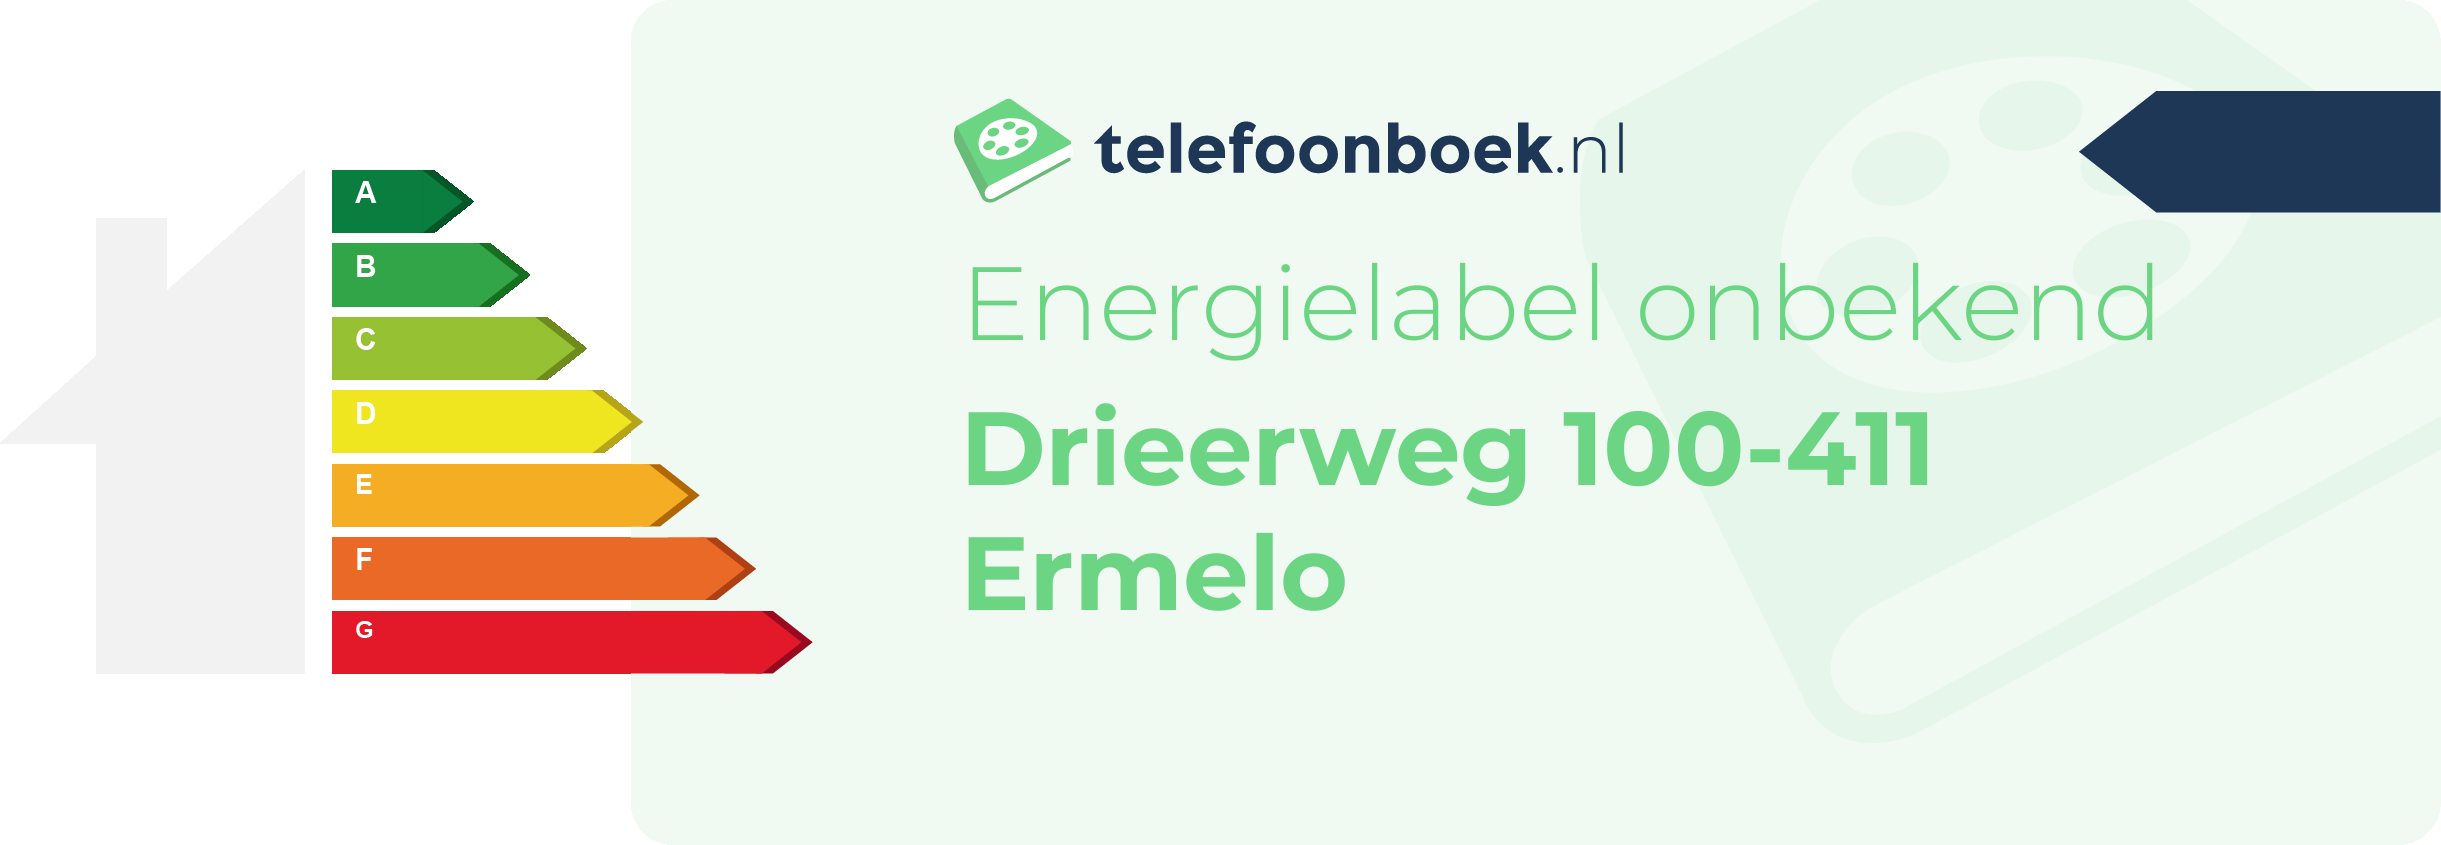 Energielabel Drieerweg 100-411 Ermelo